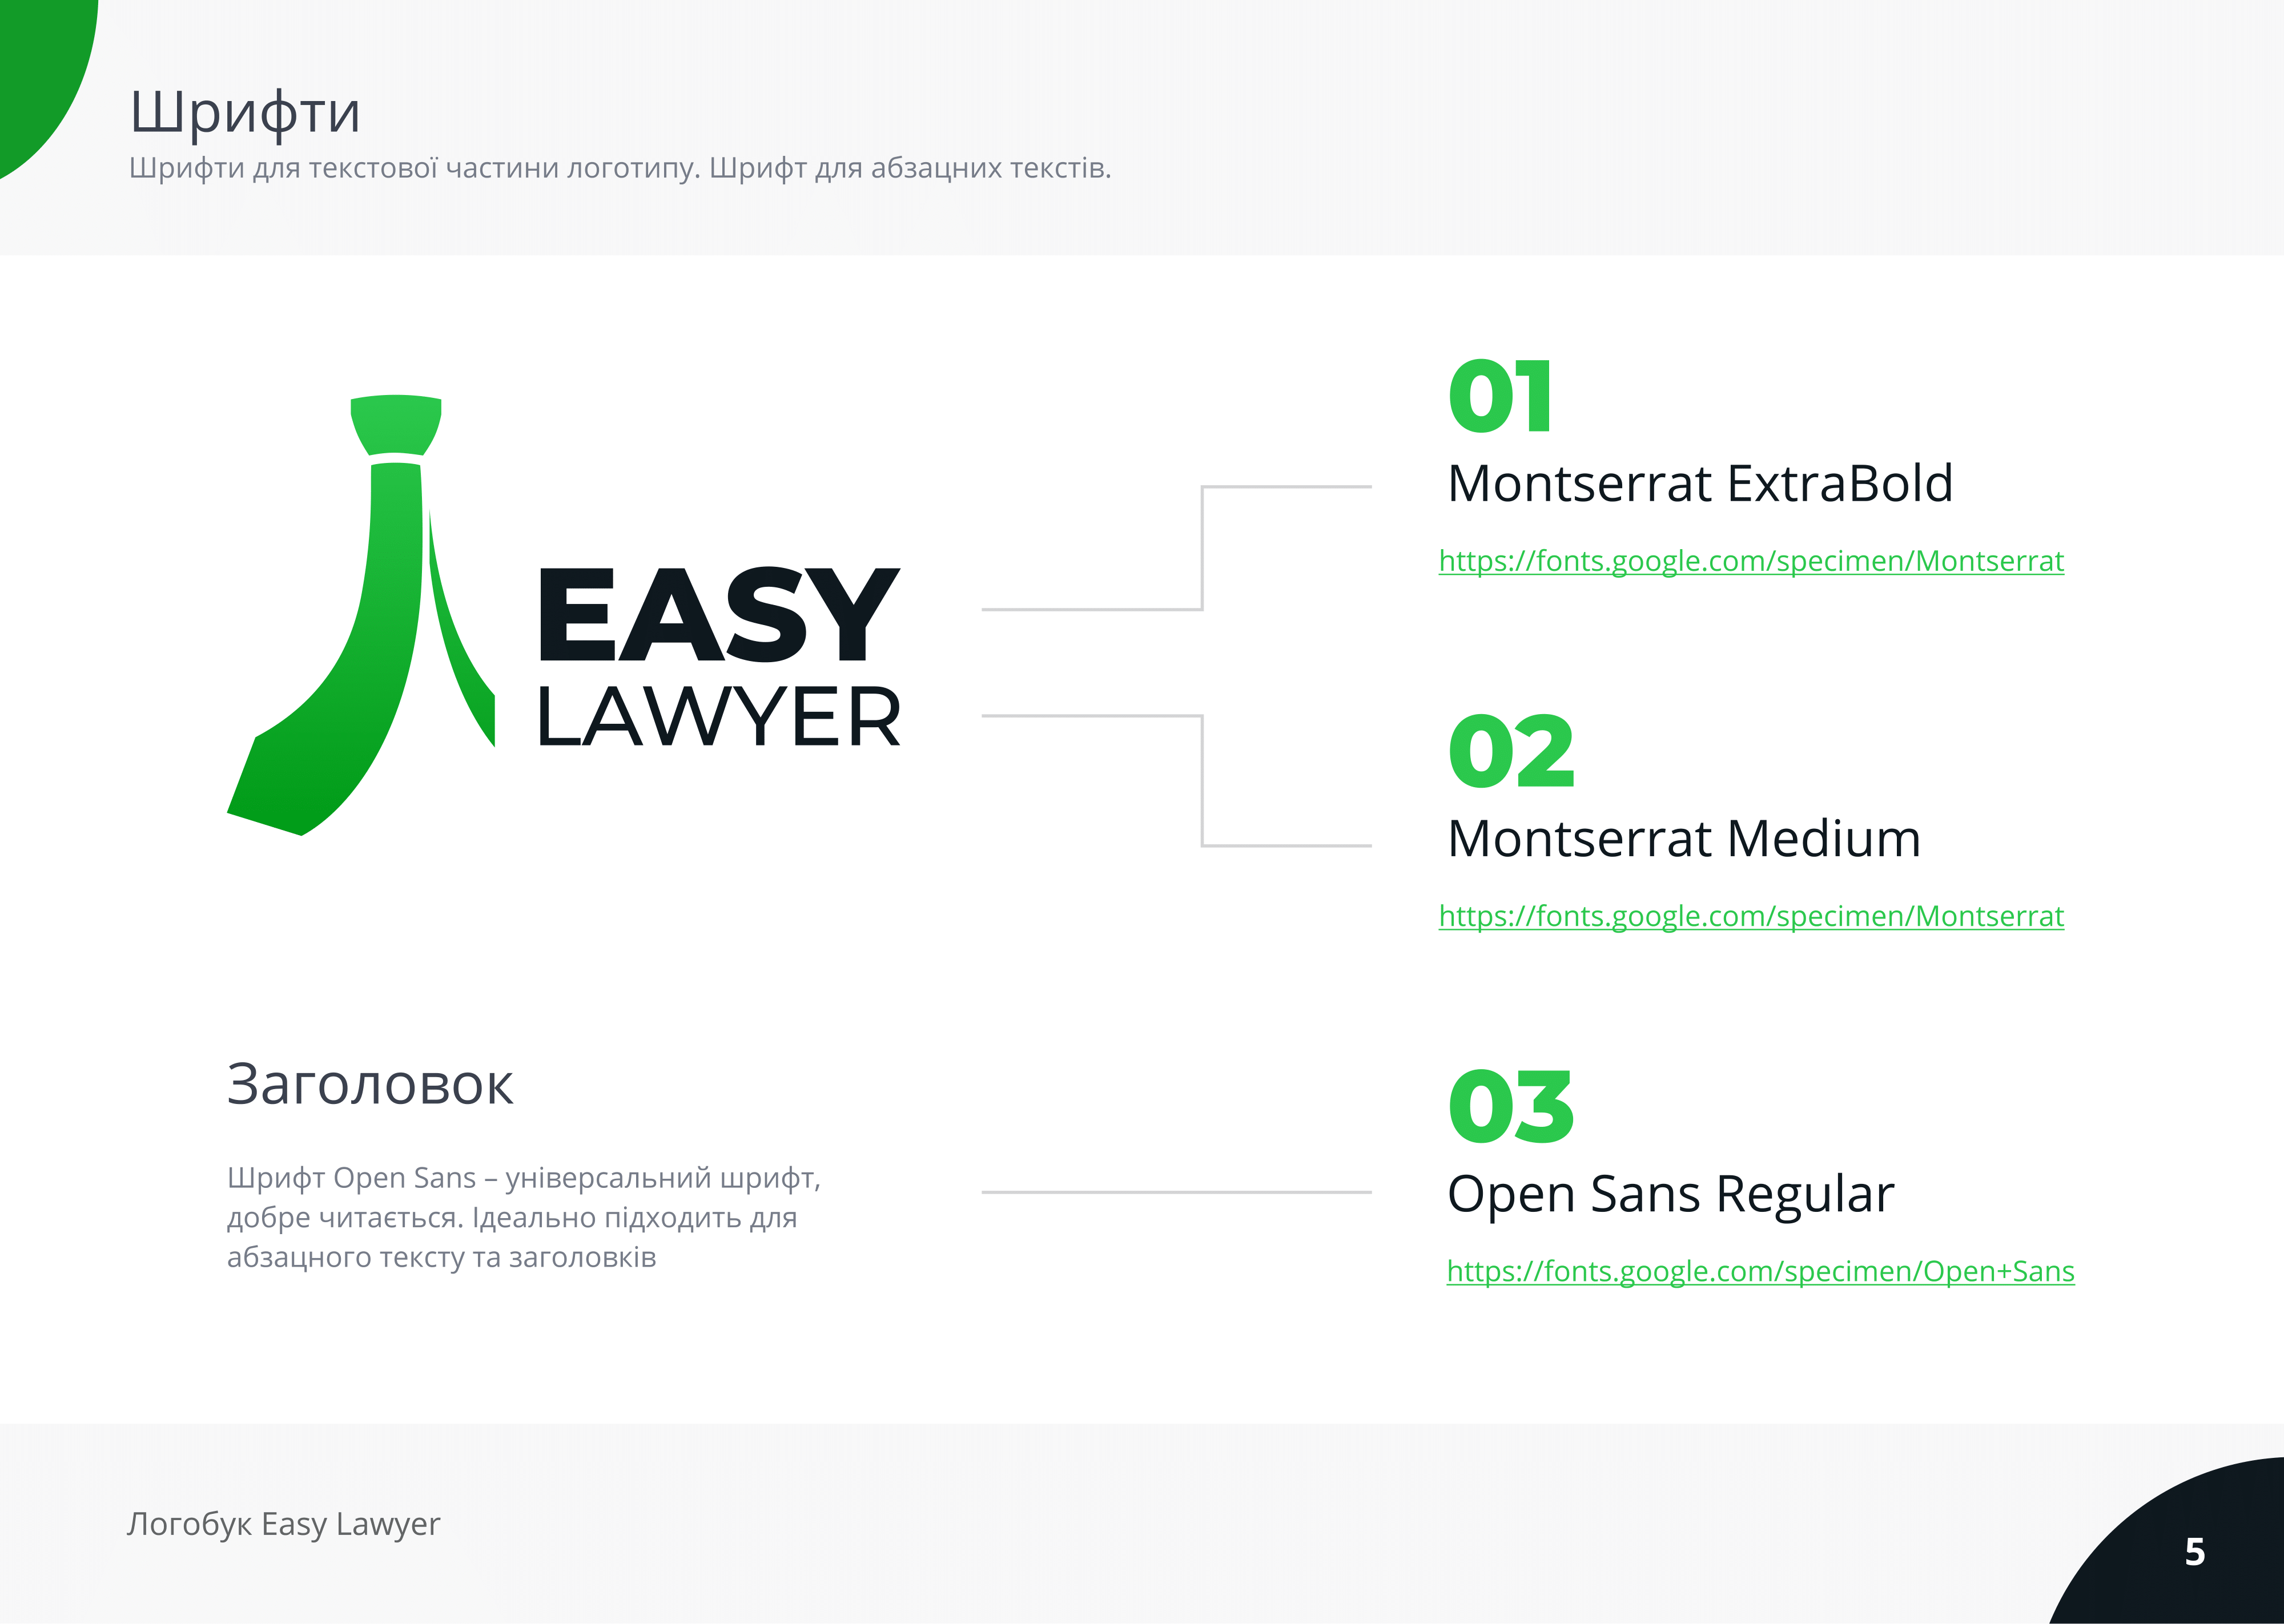 Easy Lawyer (Logobook)-05